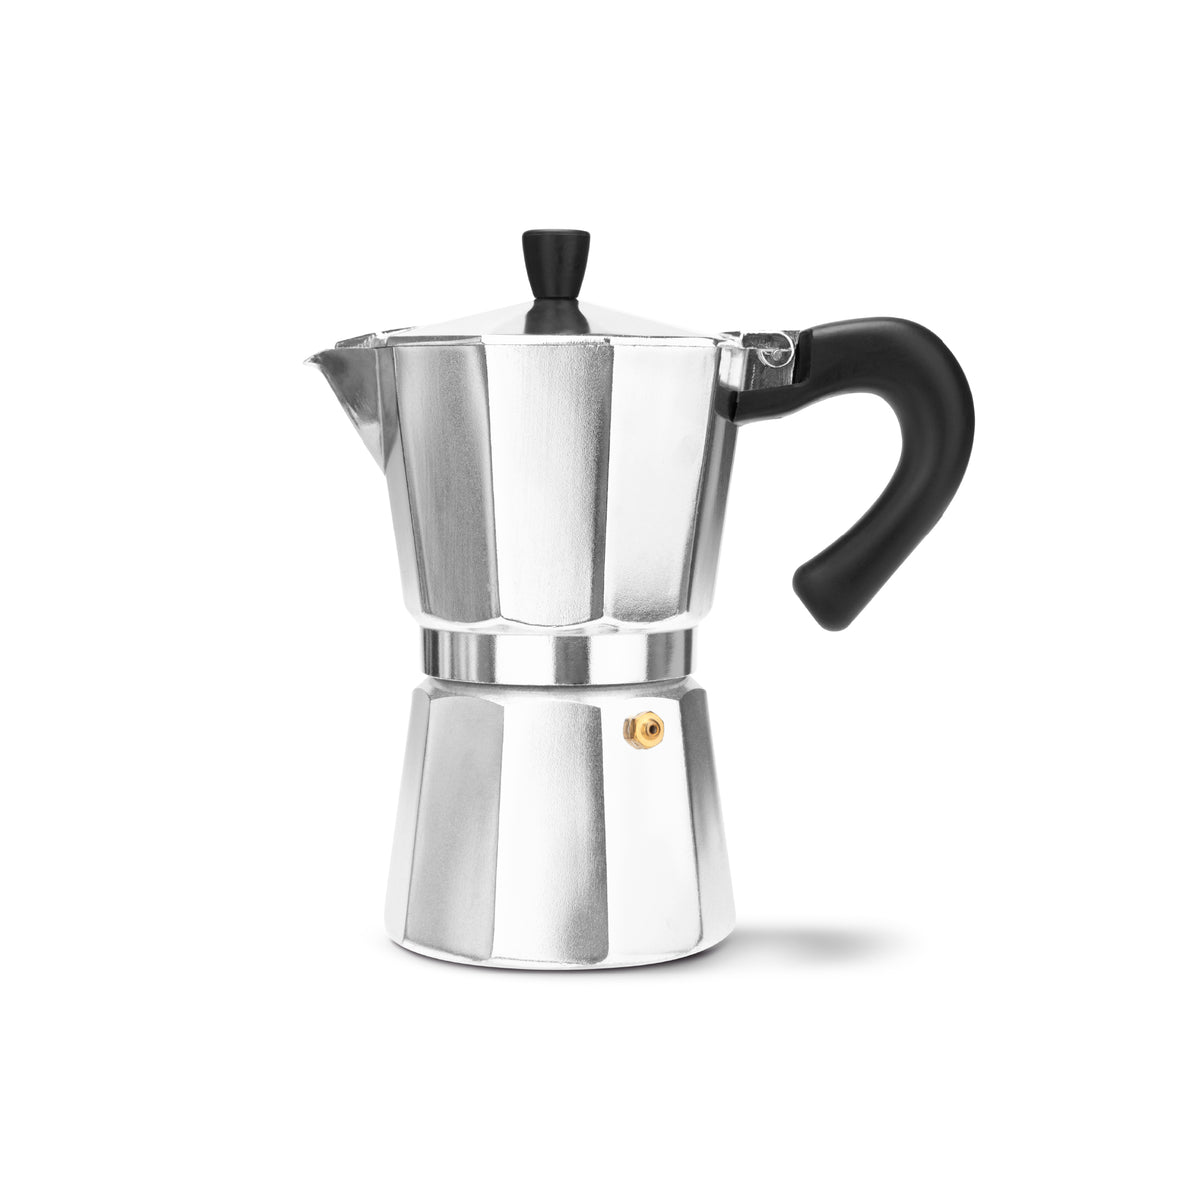 https://espresso-works.com/cdn/shop/products/espressoworks-six-cup-moka-pot-stovetop-espresso-maker_1200x.jpg?v=1604993336